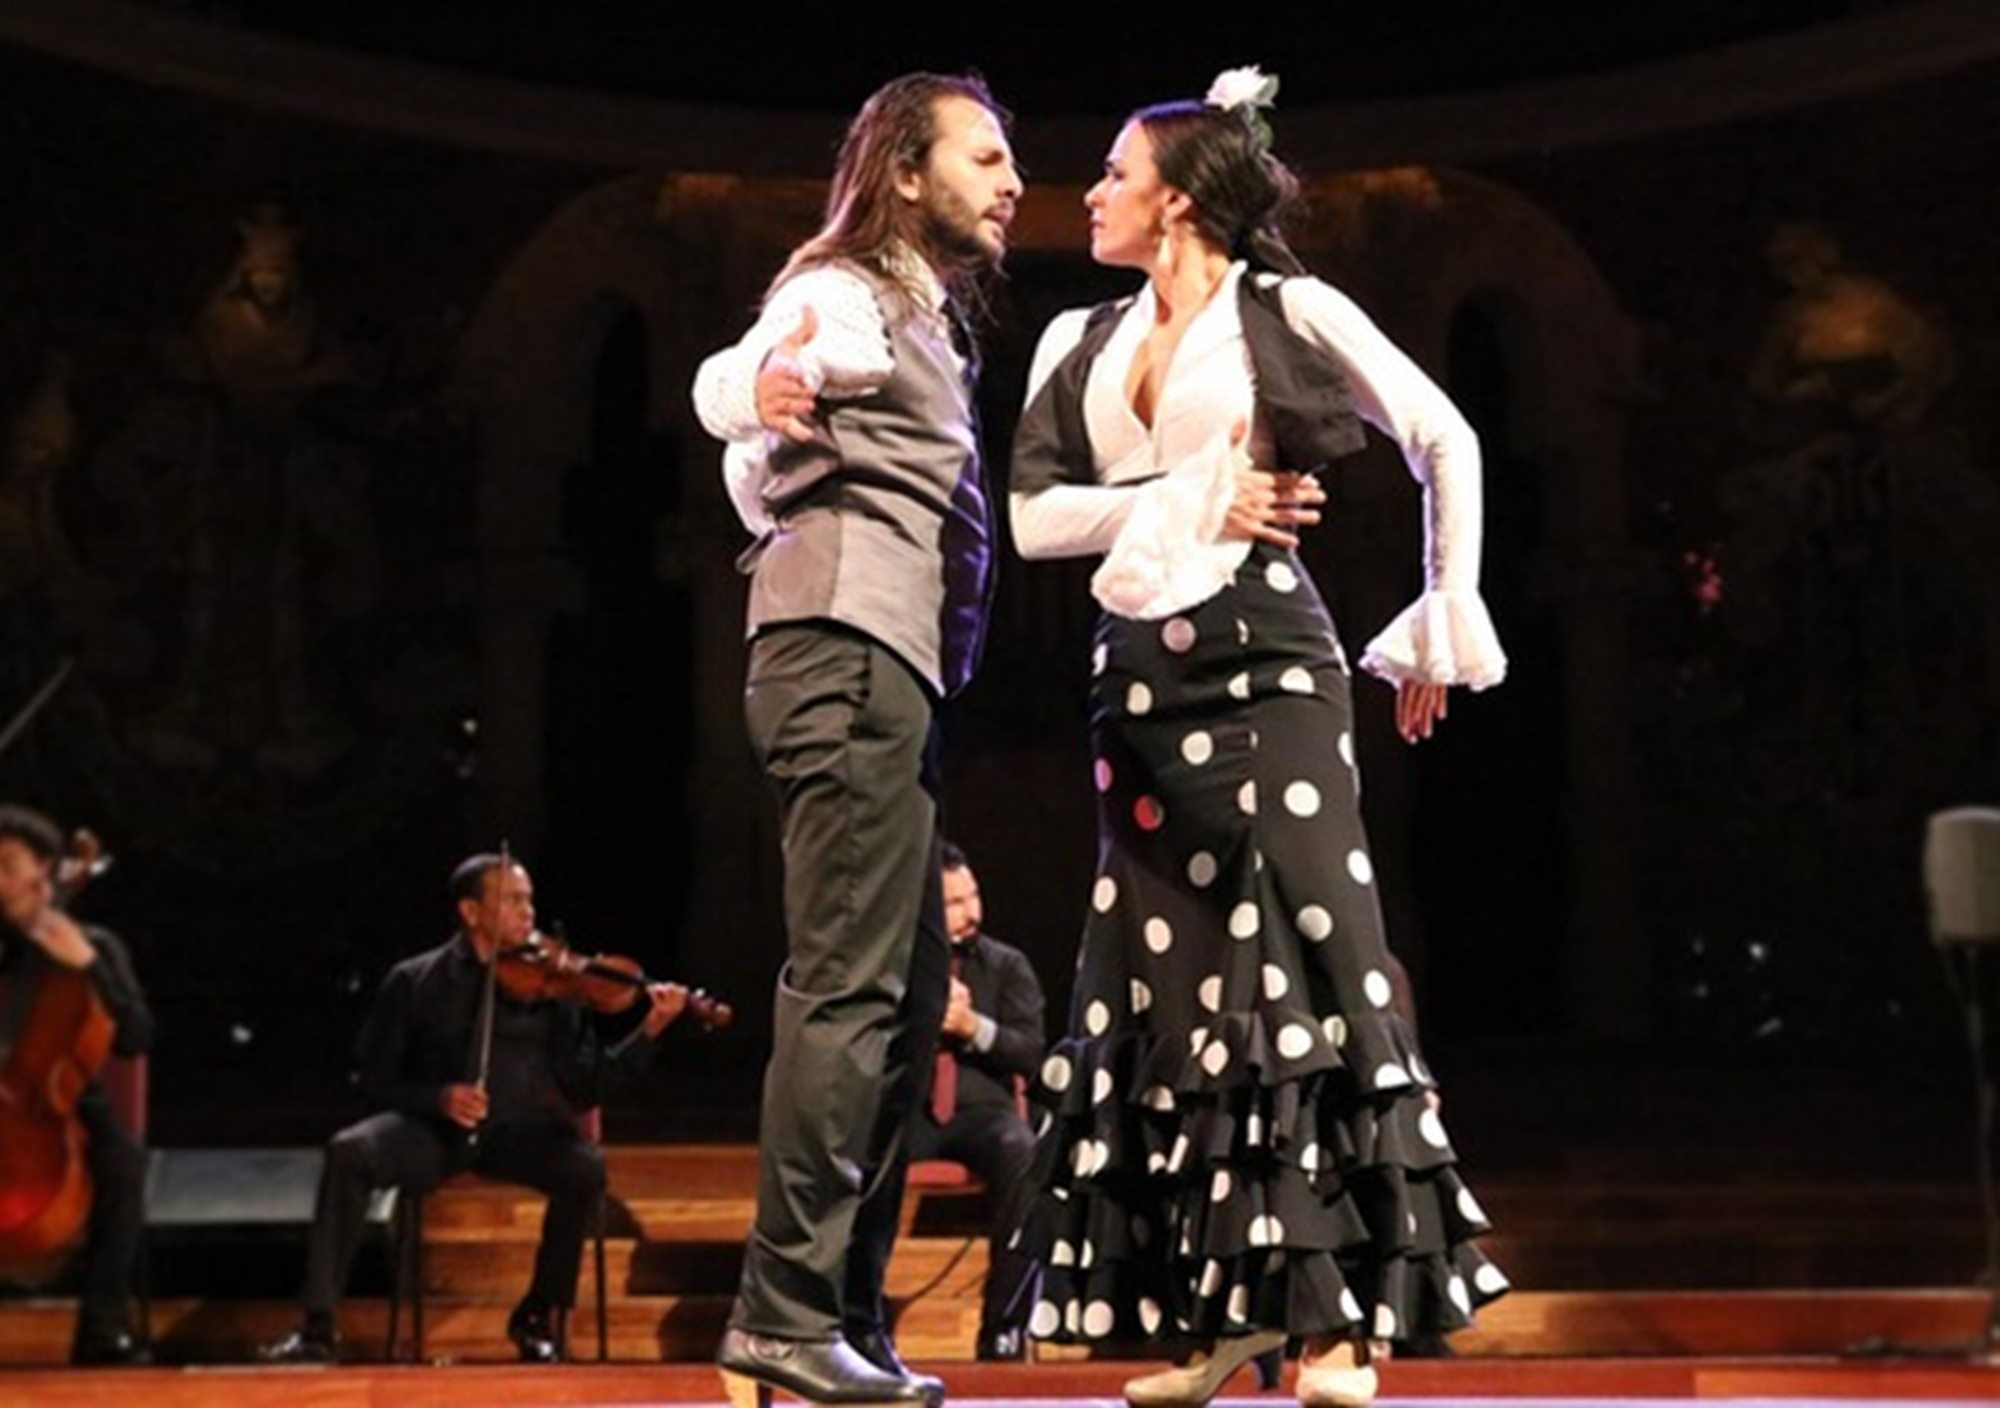 Espectáculo Ópera y Flamenco en el Teatre Poliorama de barcelona